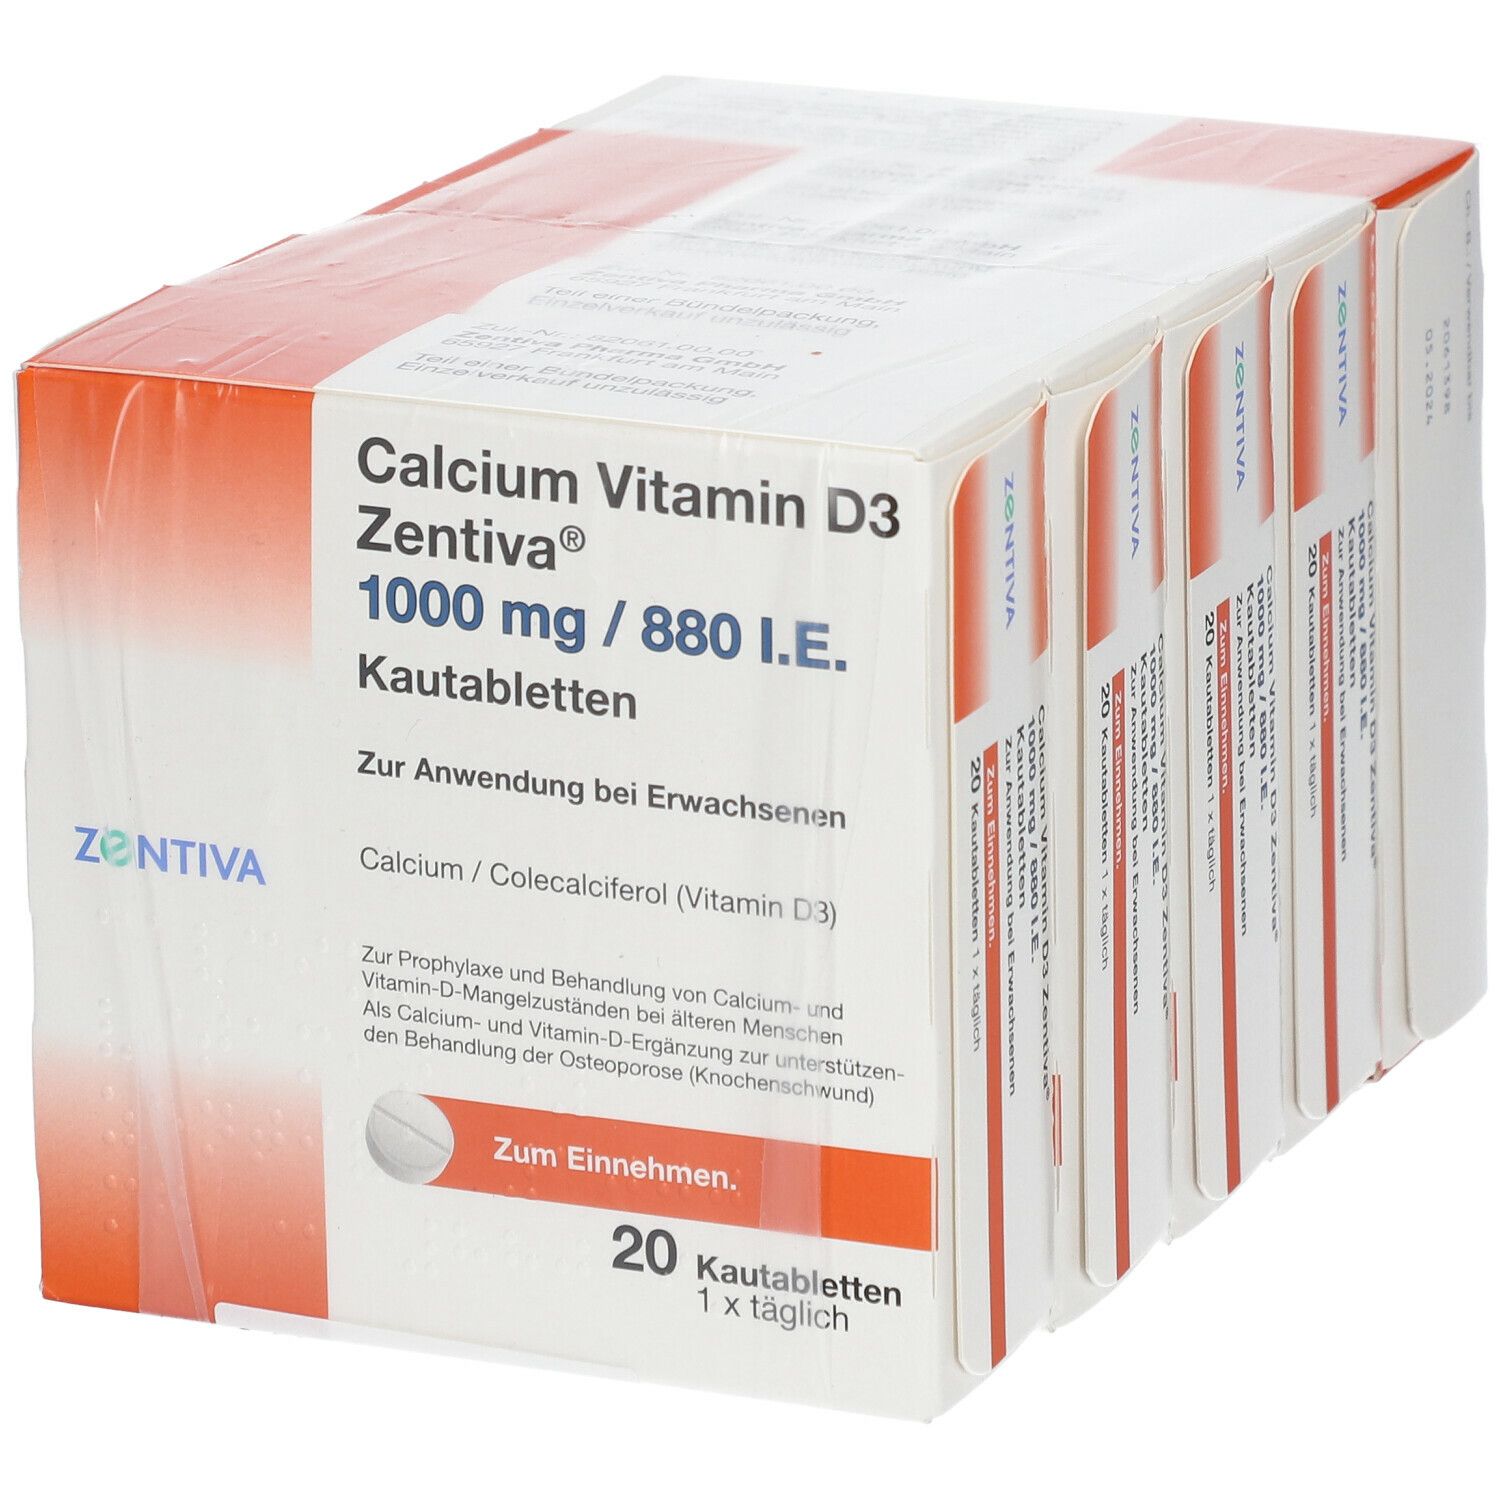 Calcium Vitamin D3 Zentiva®